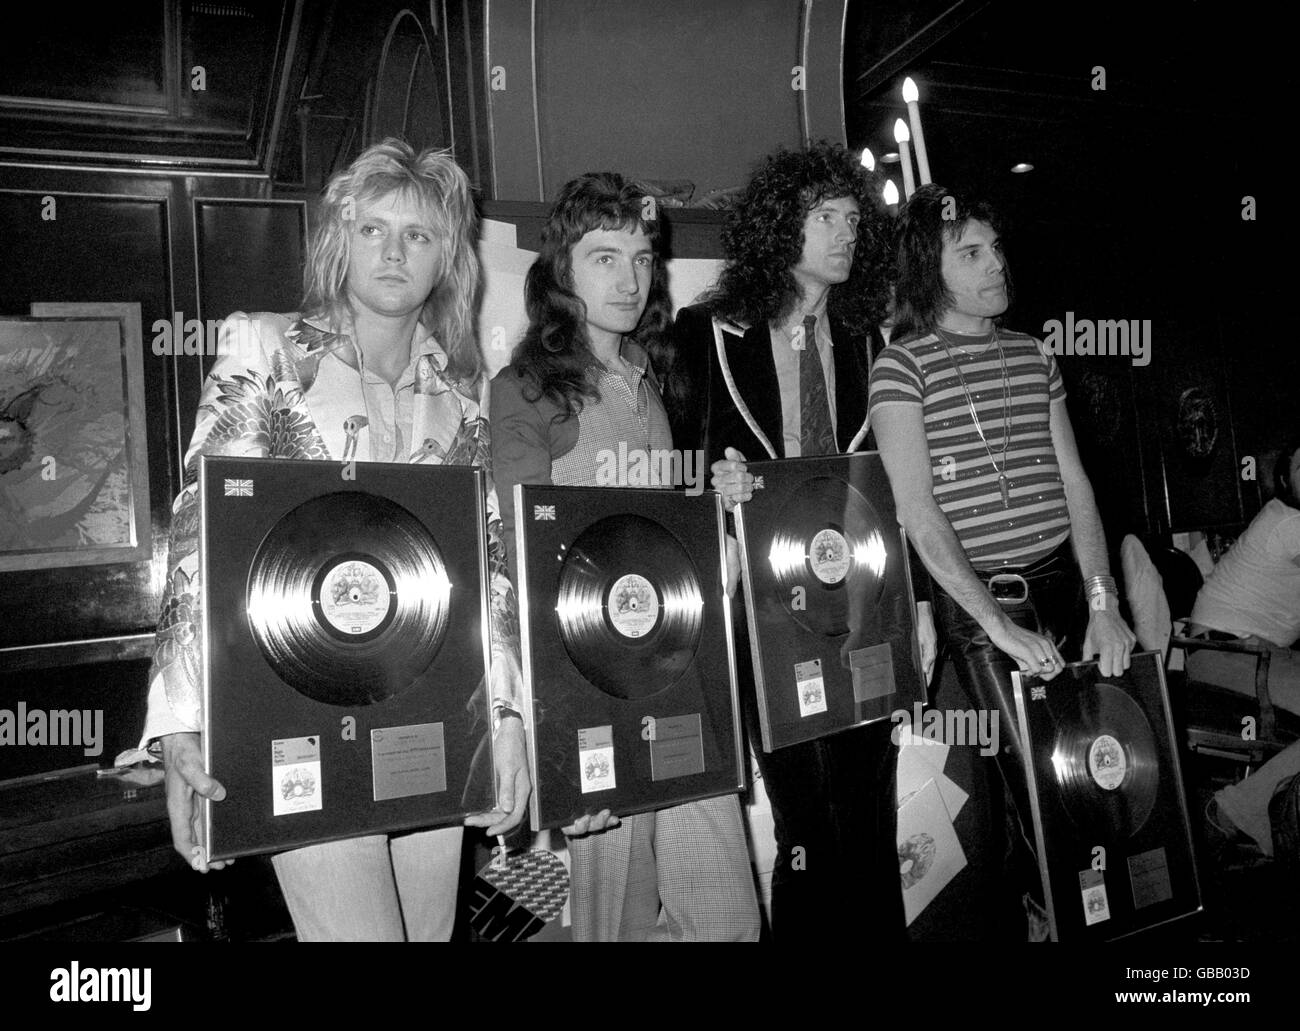 Le groupe de rock Queen, Roger Taylor, John Deacon, Brian May et Freddie Mercury (de gauche à droite), ont reçu des prix d'argent, d'or et de platine de l'Institut phonographique britannique, pour la vente de Rhapsody de Bohême et de deux albums. Banque D'Images